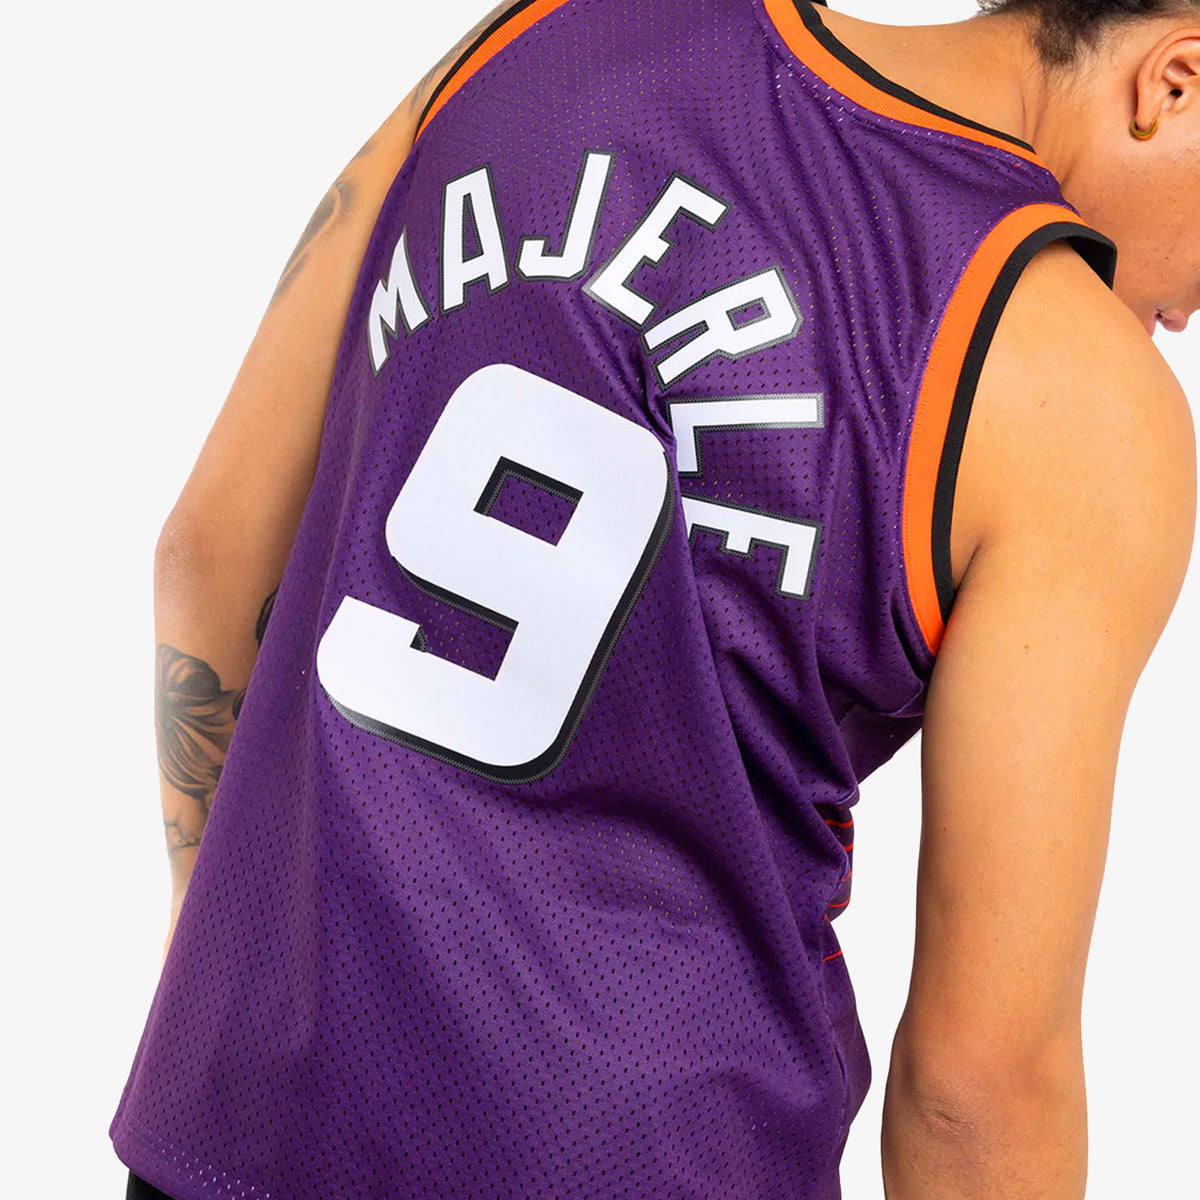 Dan Majerle Phoenix Suns jersey champion size 44 Blue